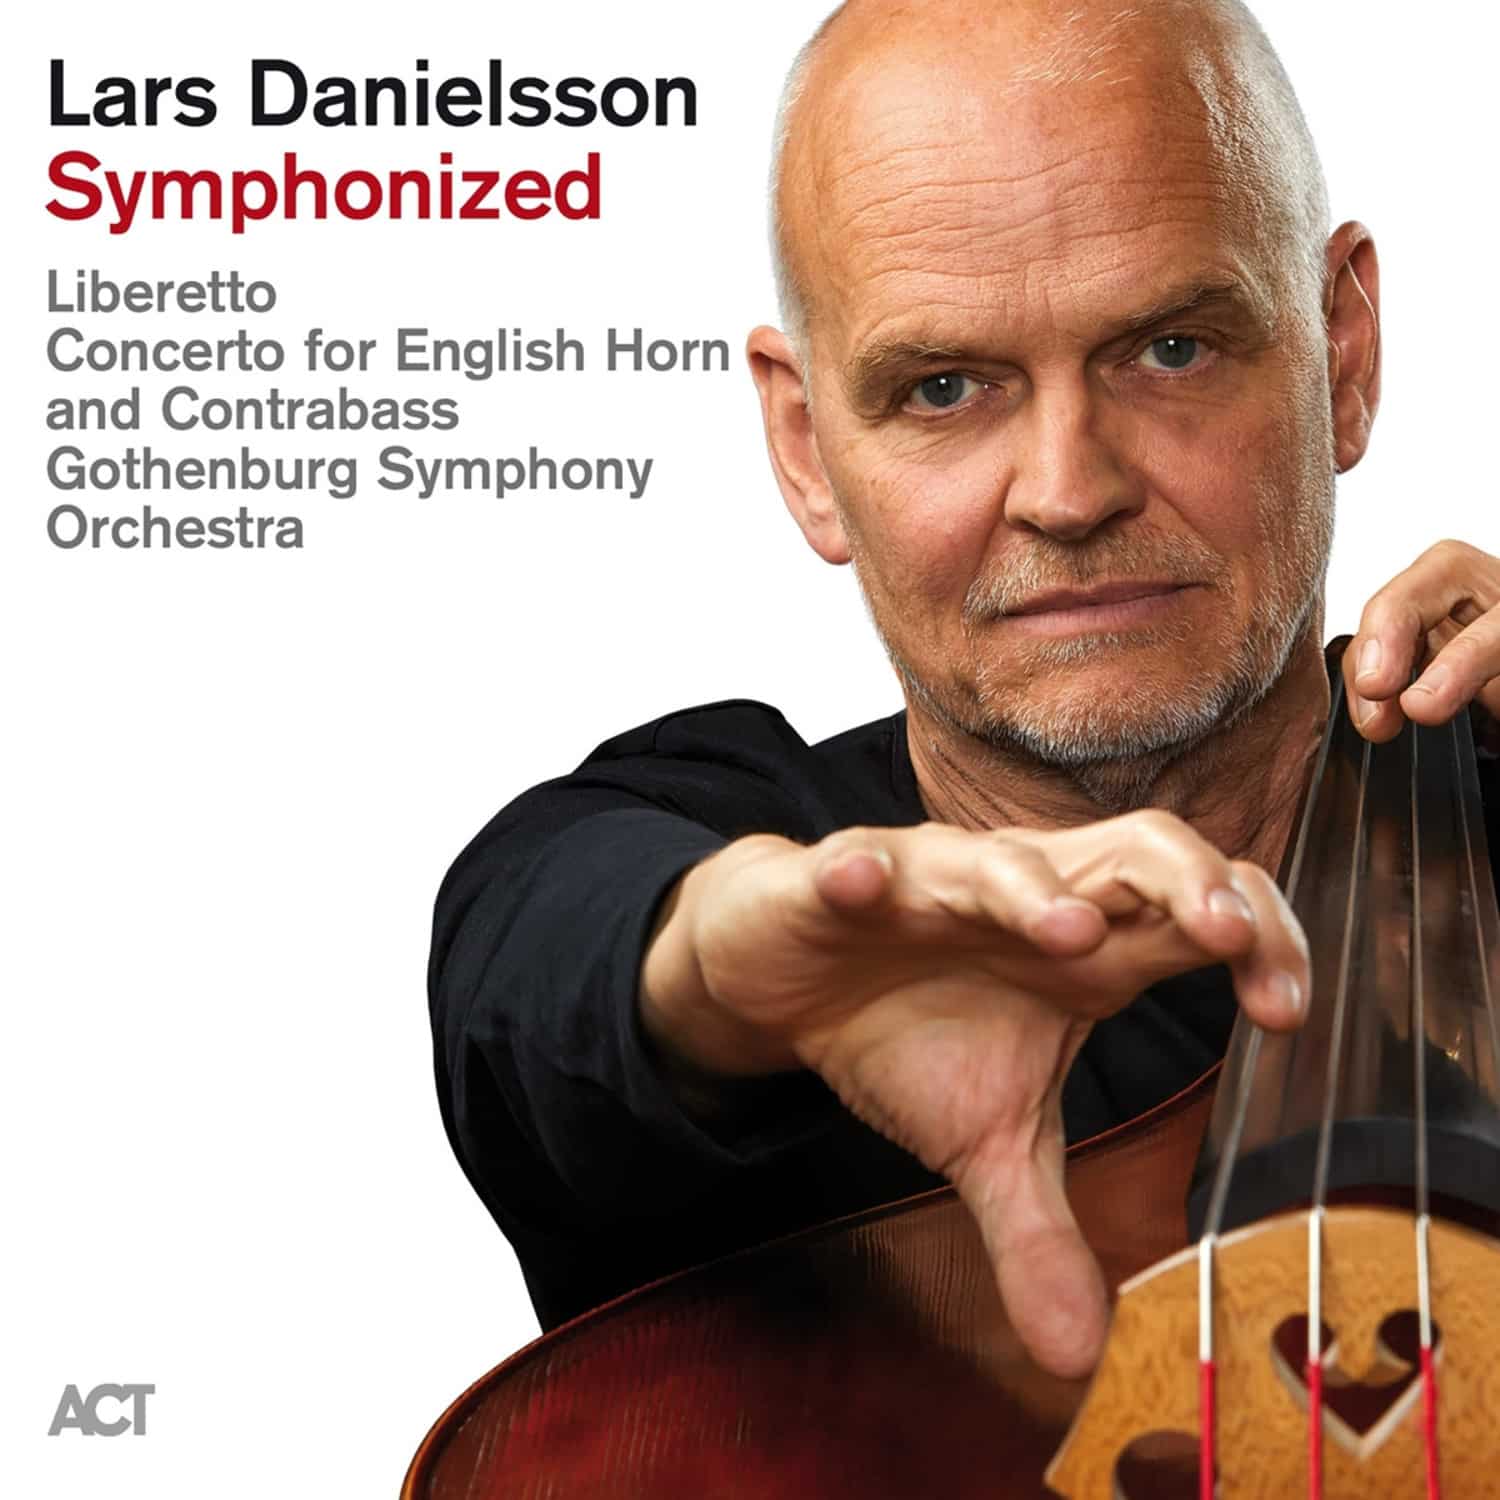  Lars Danielsson - SYMPHONIZED 